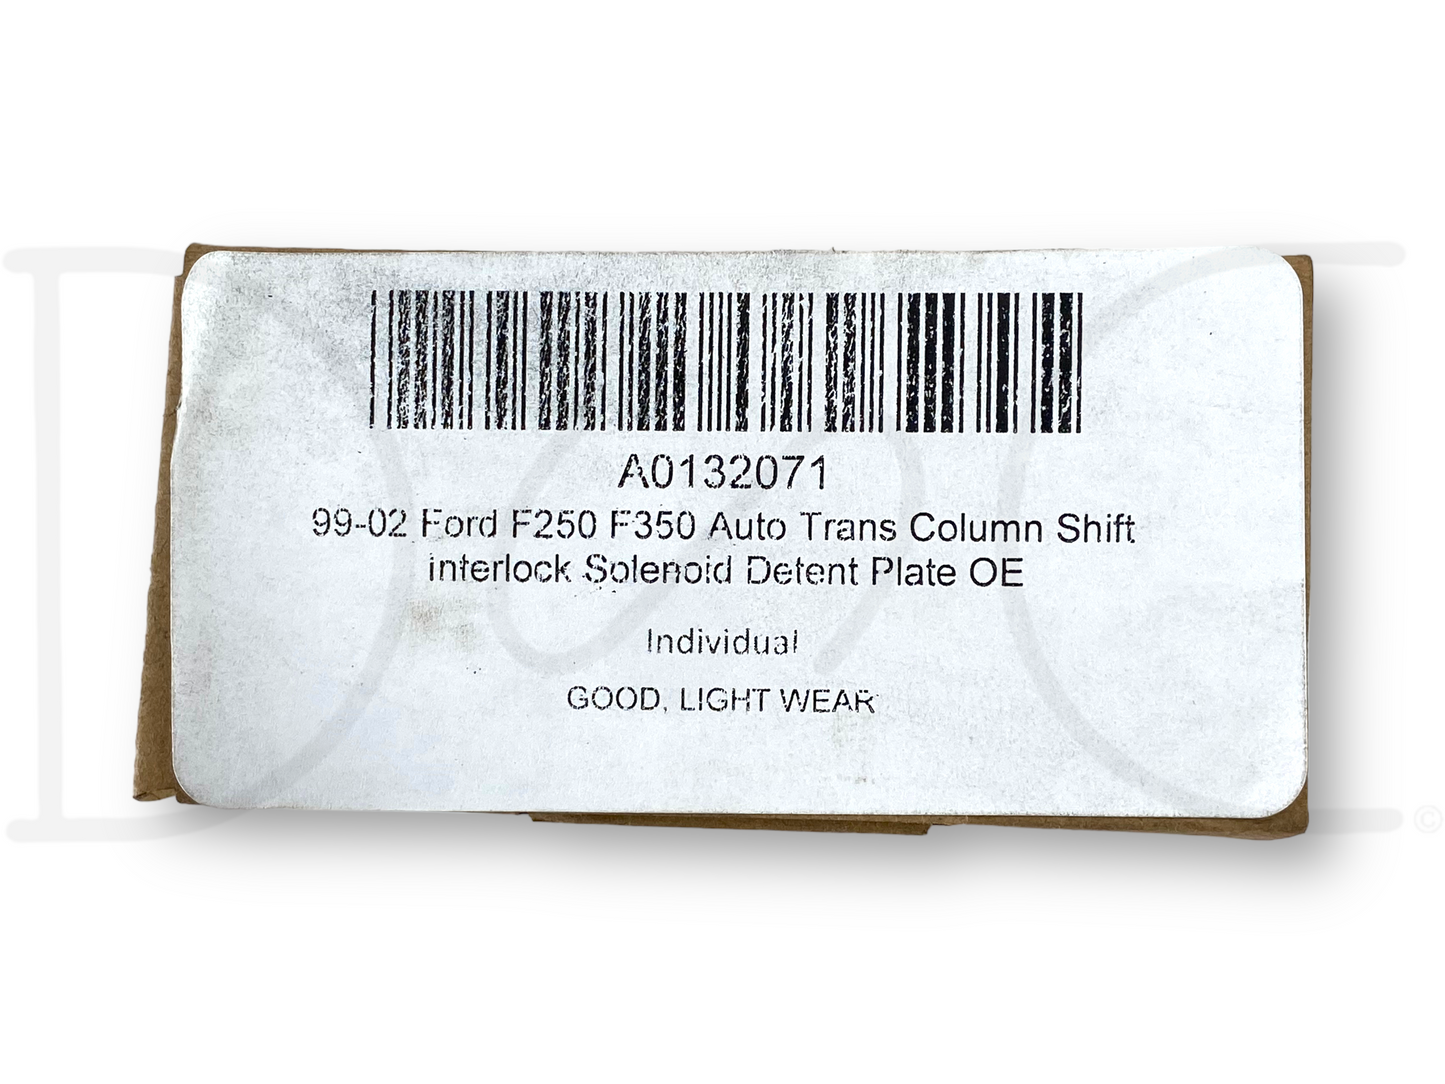 99-07 Ford F250 F350 Auto Trans Column Shift Interlock Solenoid Detent Plate OE